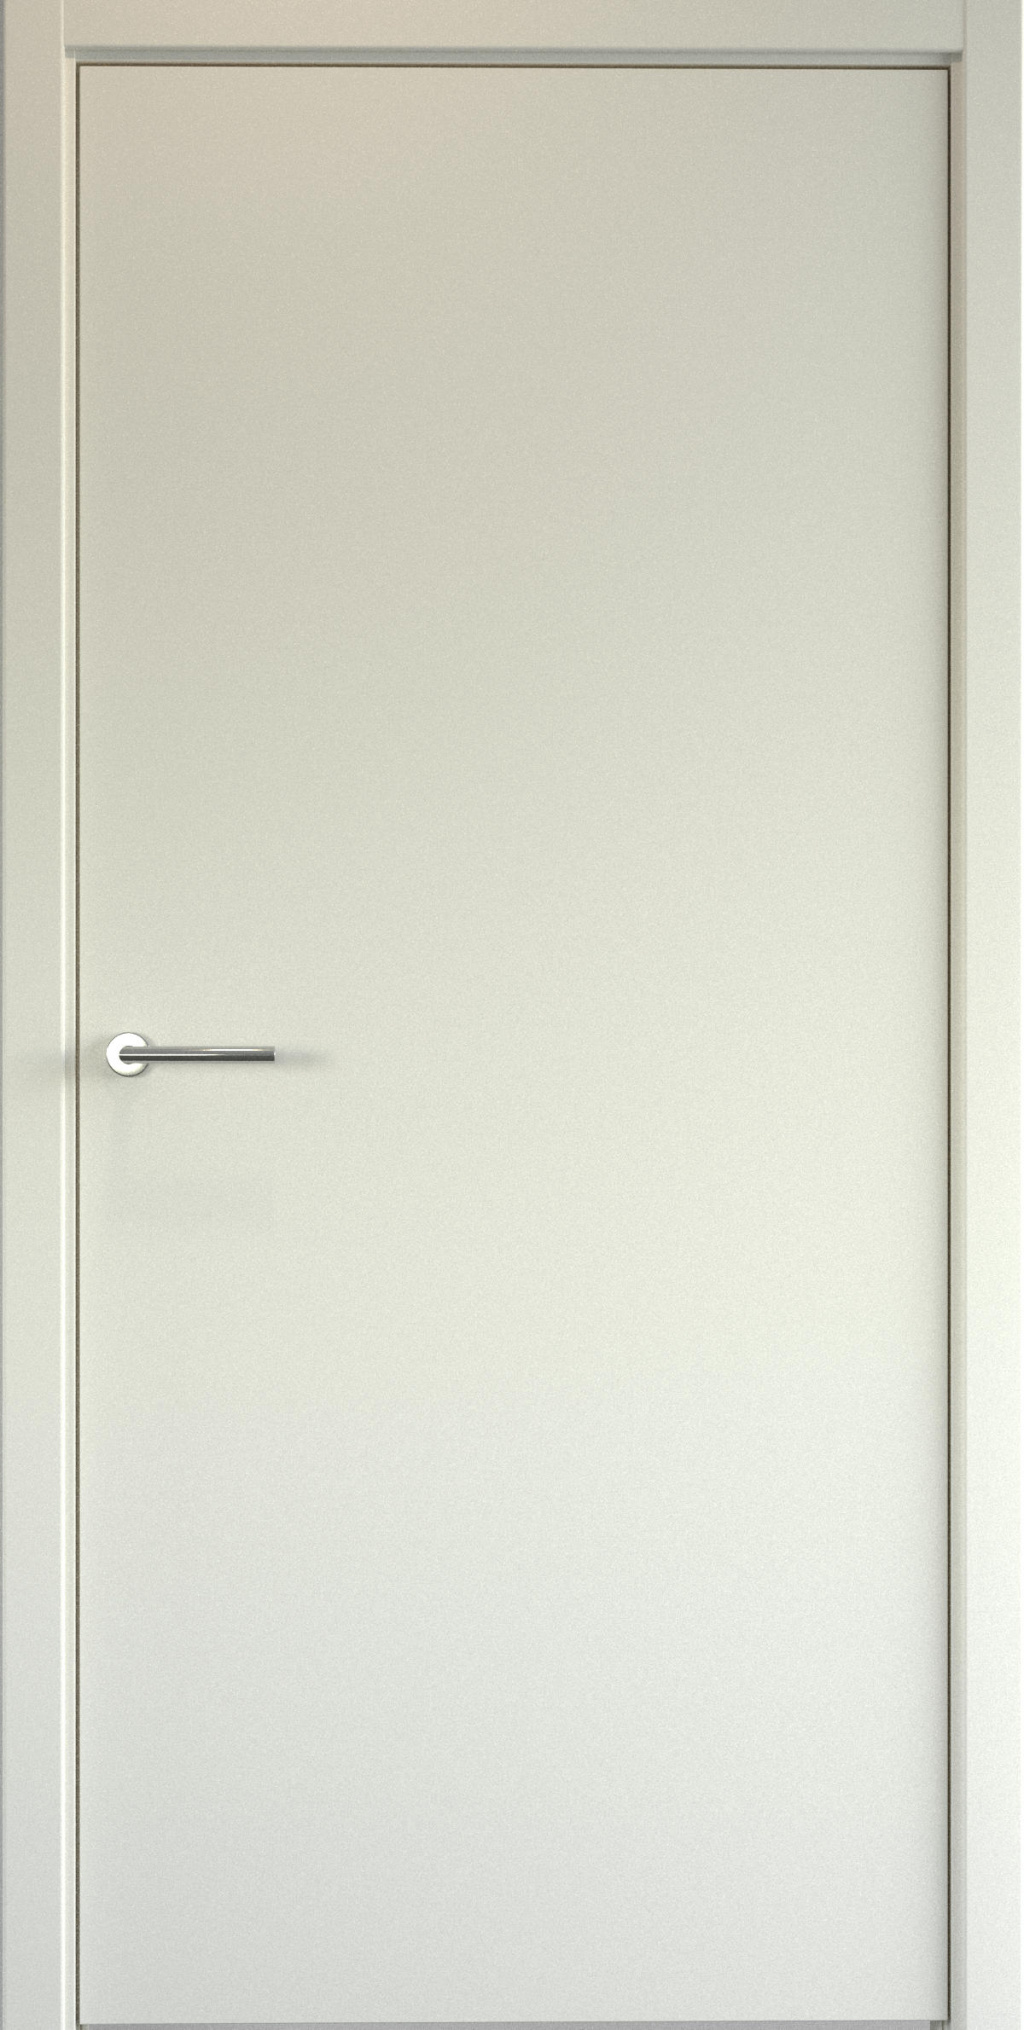 Albero Межкомнатная дверь Геометрия-1 магнитный замок в комплекте, арт. 20136 - фото №2